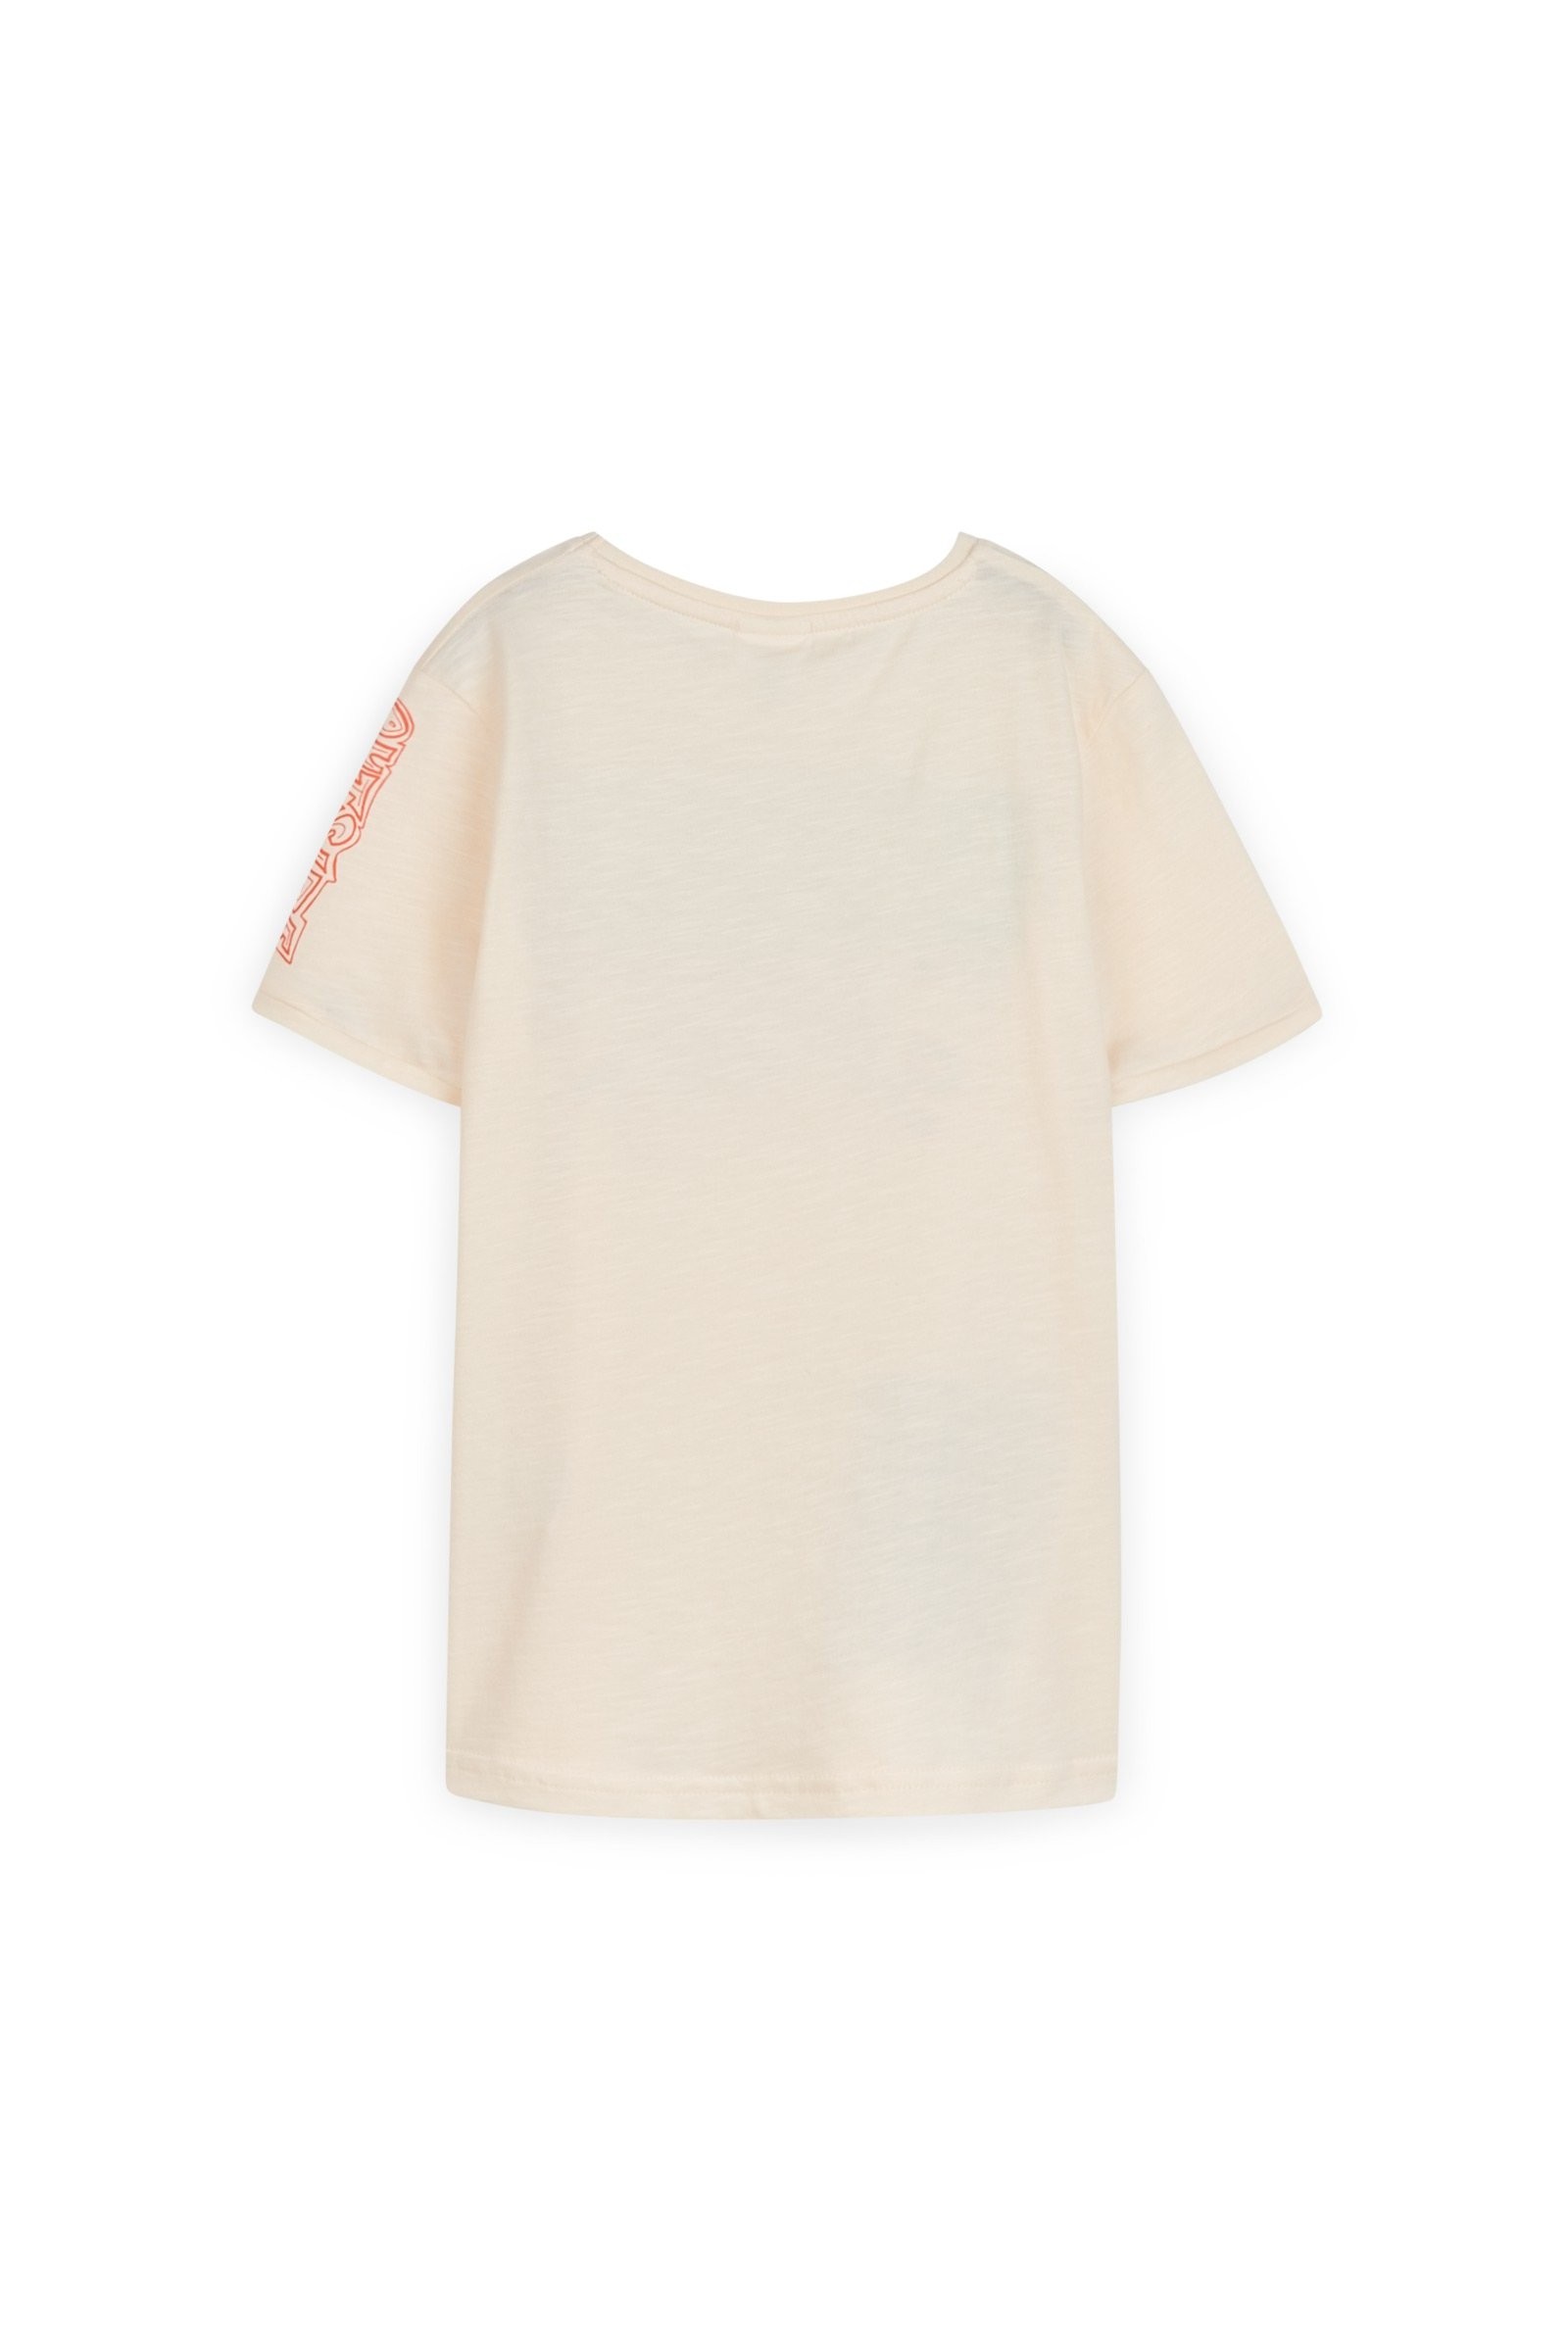 CKS Kids - YEDGAR - t-shirt short sleeves - white